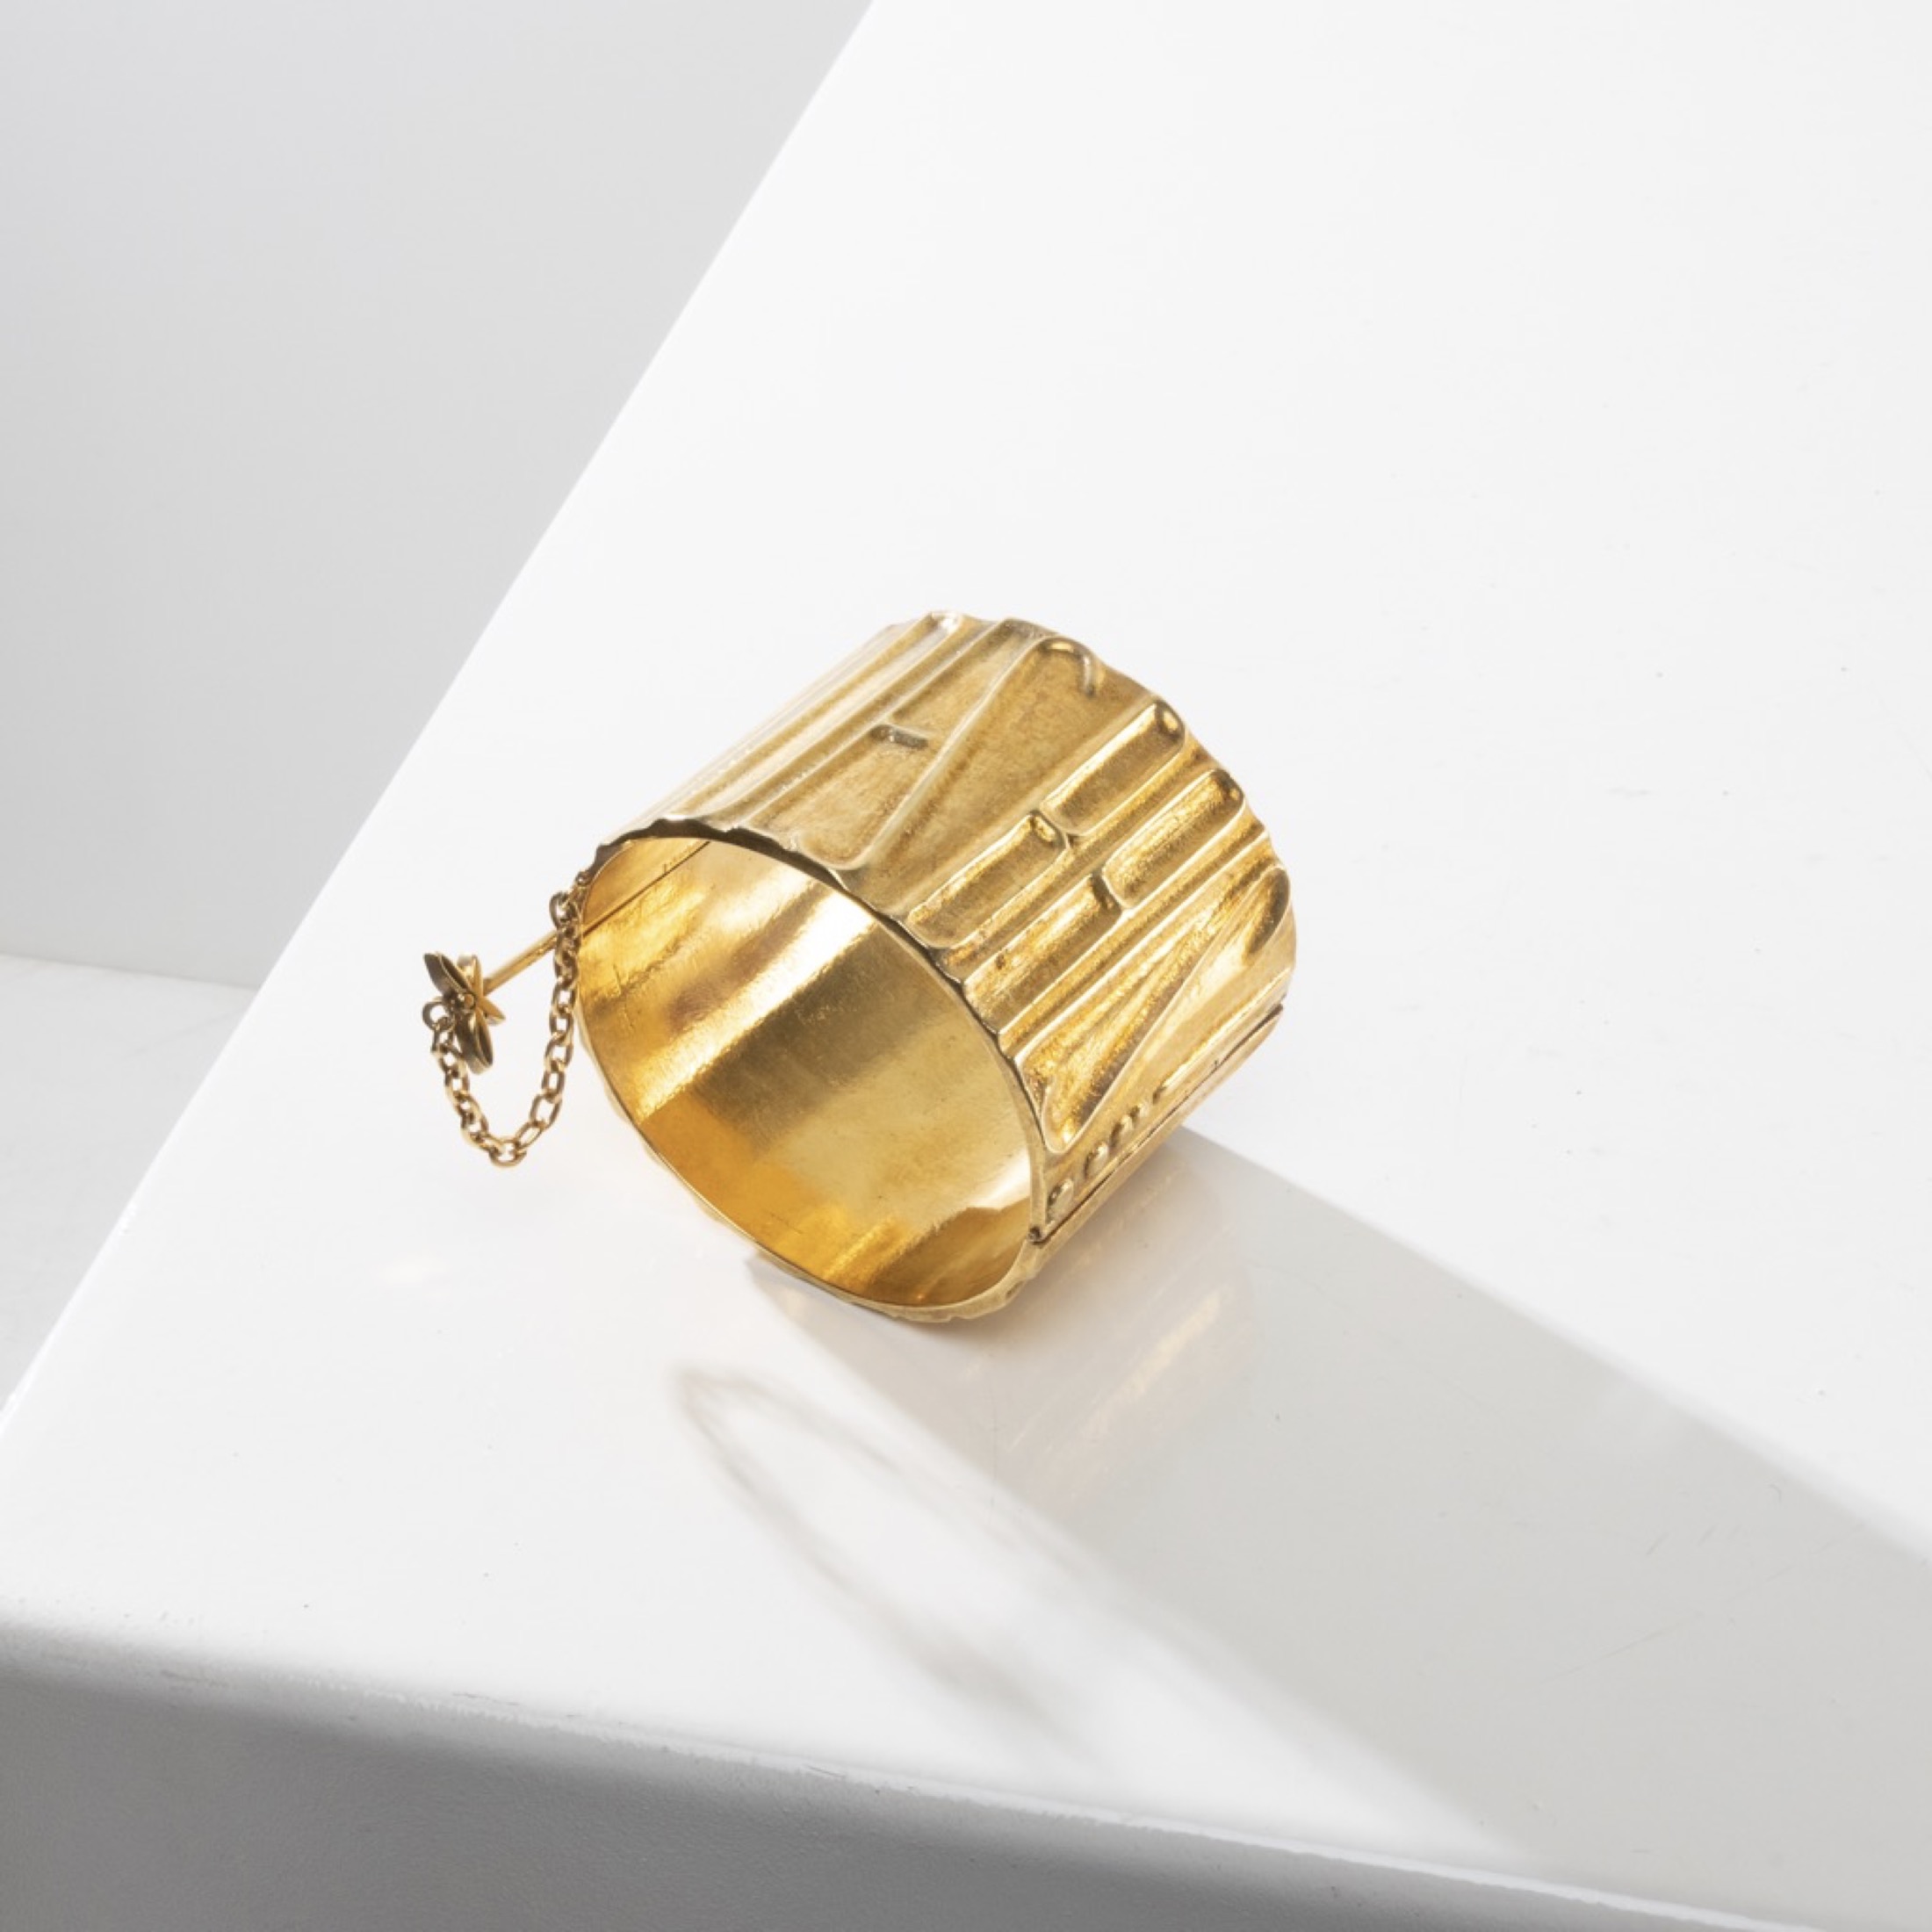 De la poudre et des bals by Line Vautrin - Gilt bronze armband - 02